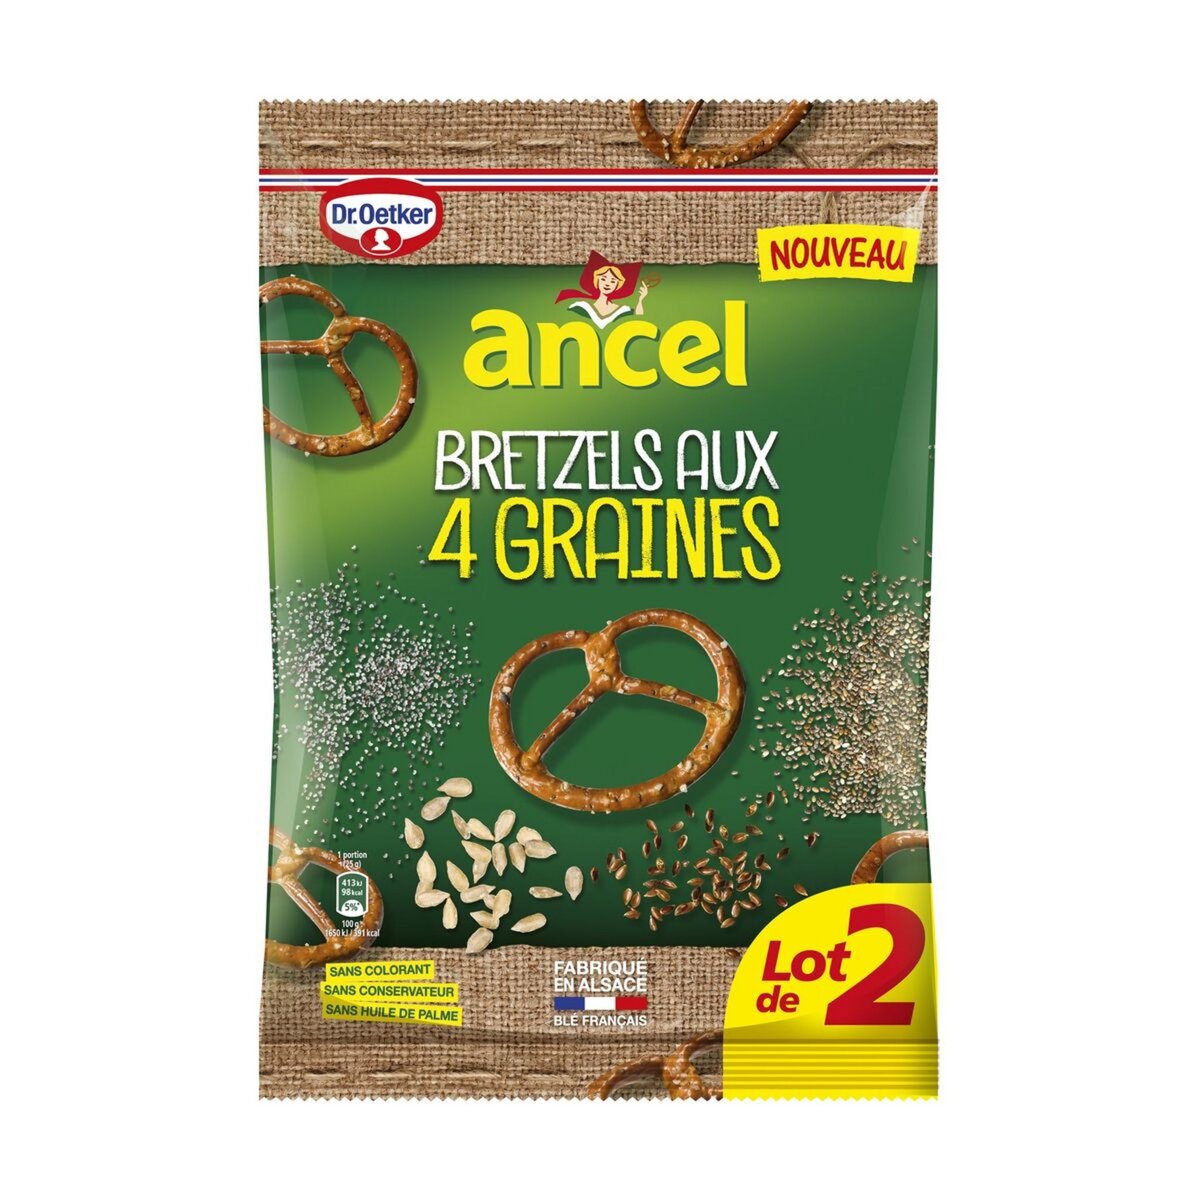 ANCEL Bretzels aux 4 graines lot de 2 2x125g